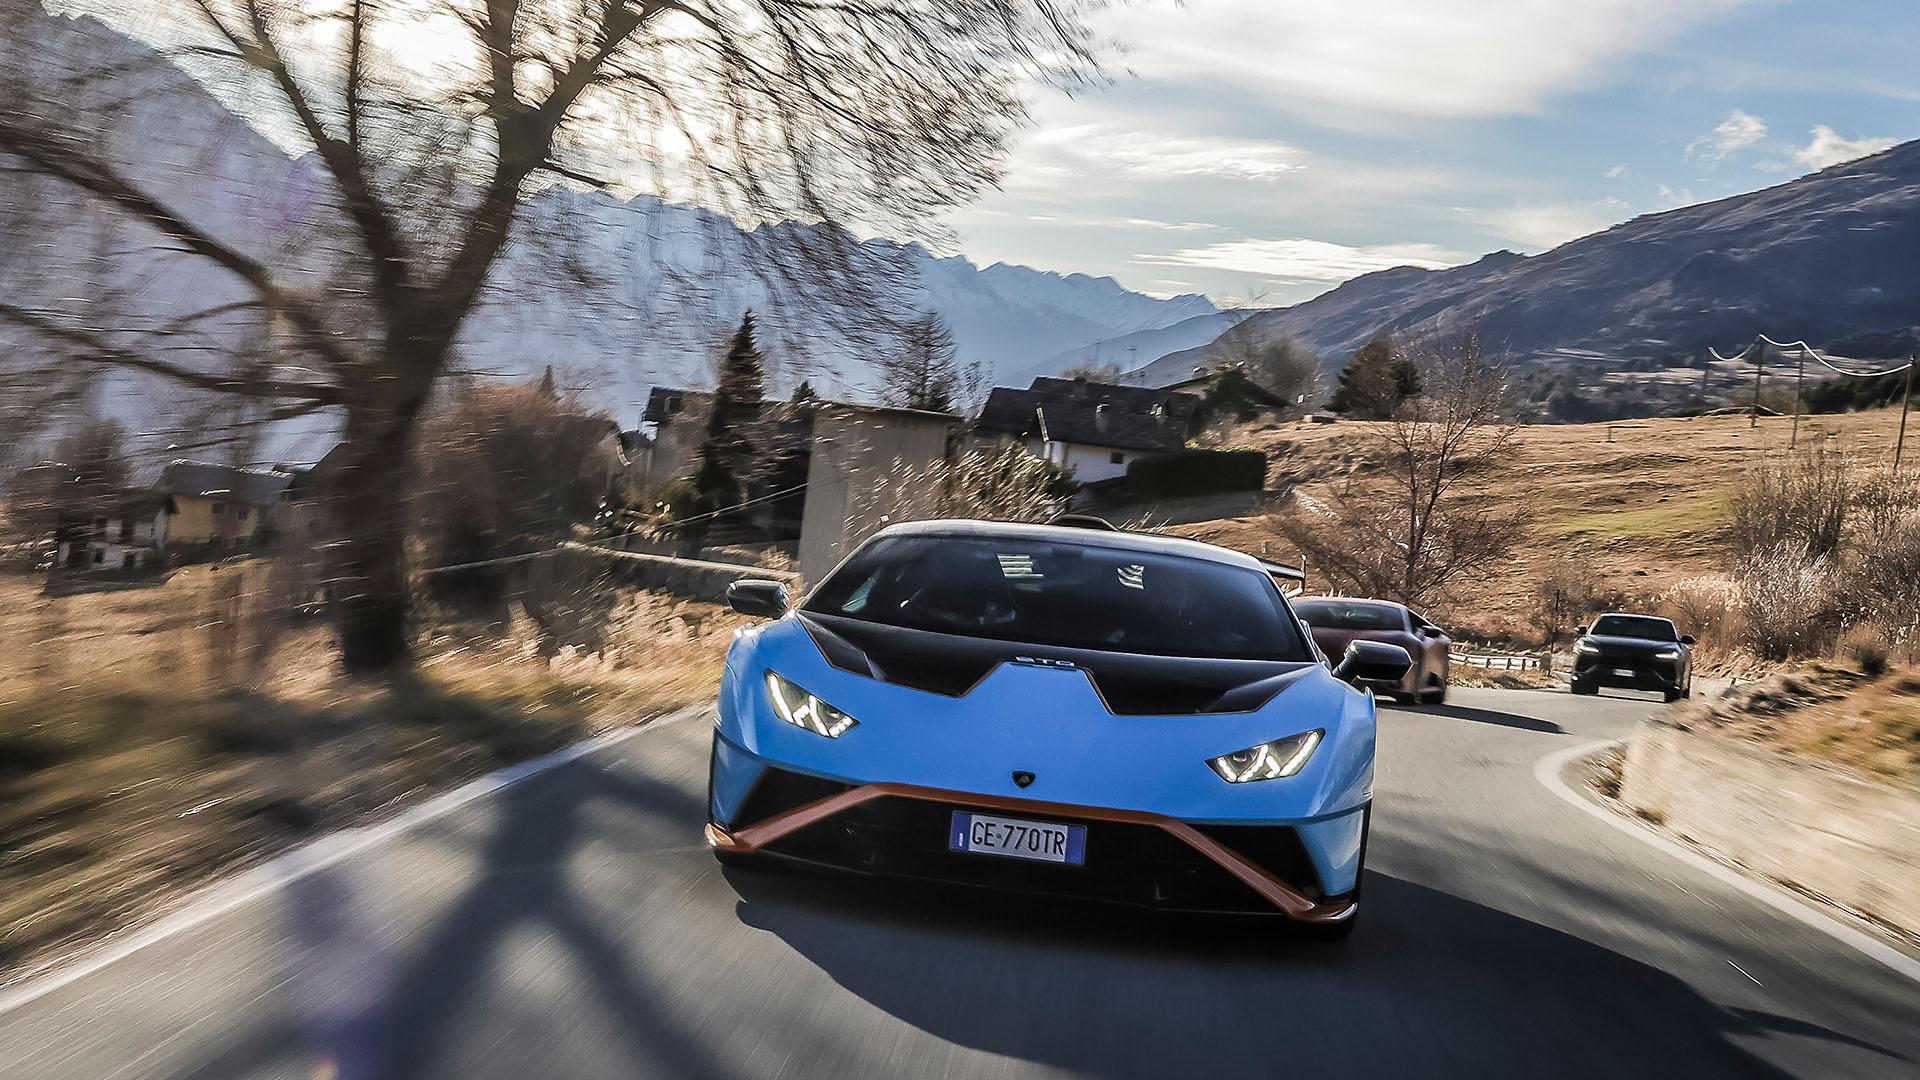 2022 Lamborghini in winter drive 34